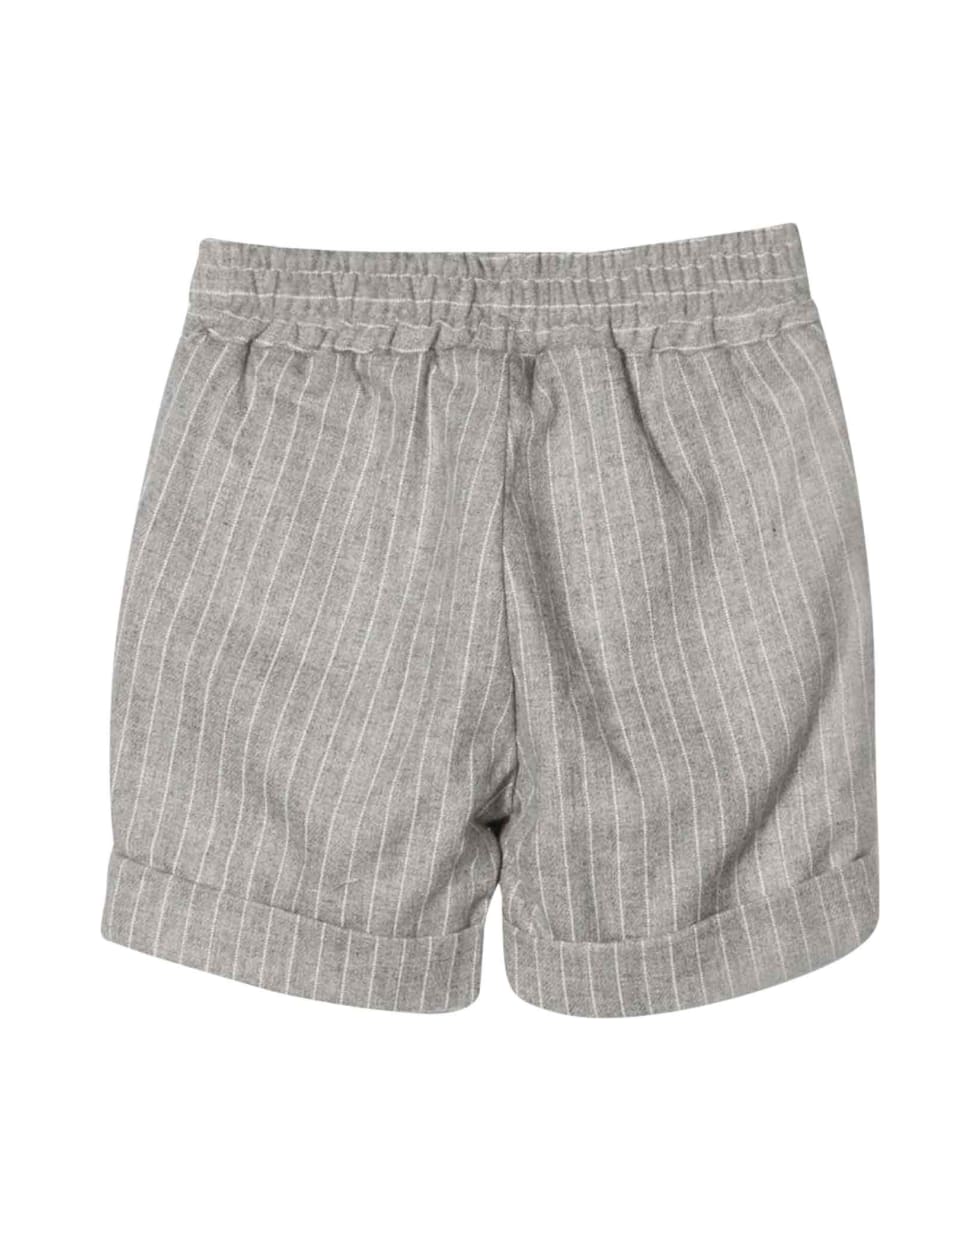 leBebé Le Bebé Enfant Newborn Gray Pinstriped Shorts - Grigio